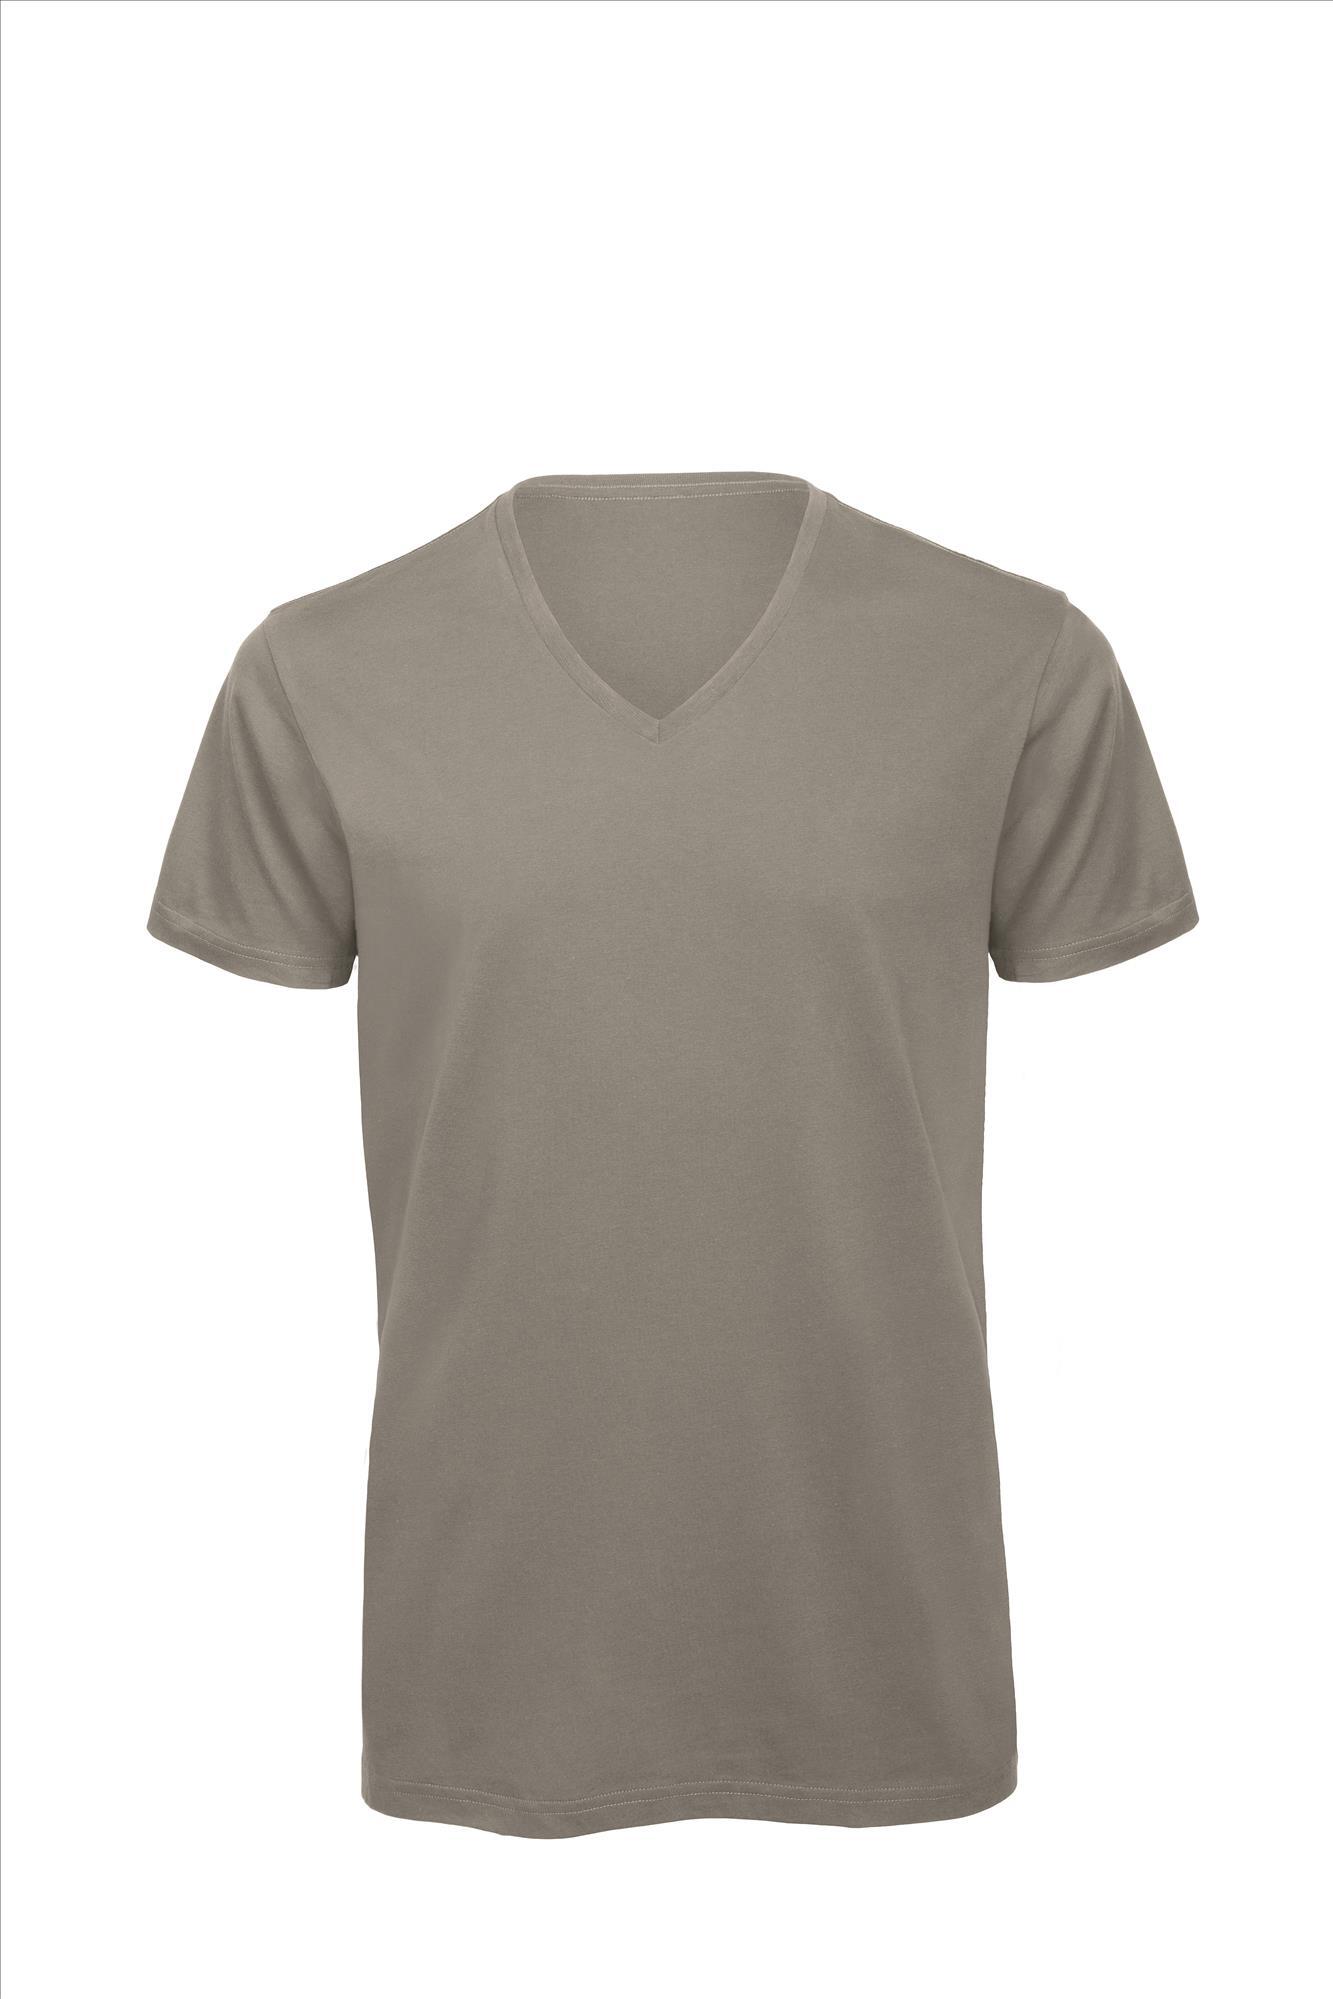 T-shirt met V-hals voor heren grijs Luxe bio kwaliteit